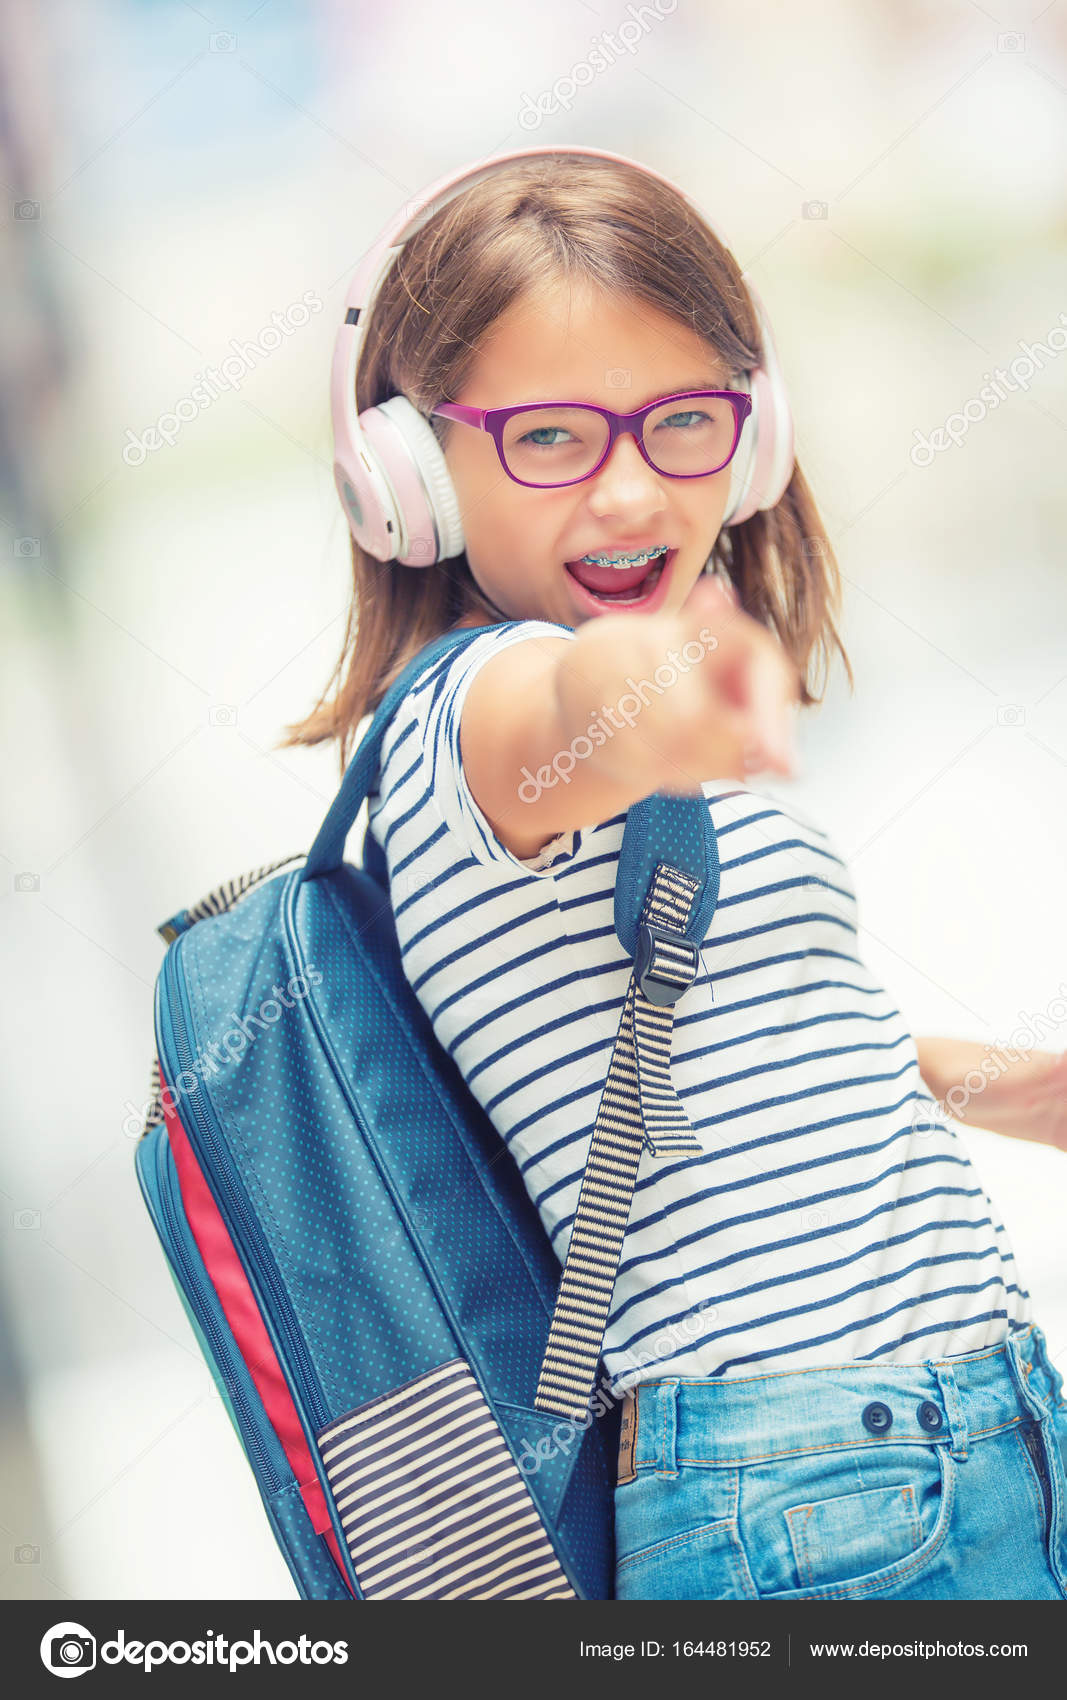 Skolepige med taske, Portræt af glade teenage skole taske rygsæk hovedtelefoner og tablet. Pige med tandbøjle og briller — Stock-foto © weyo #164481952